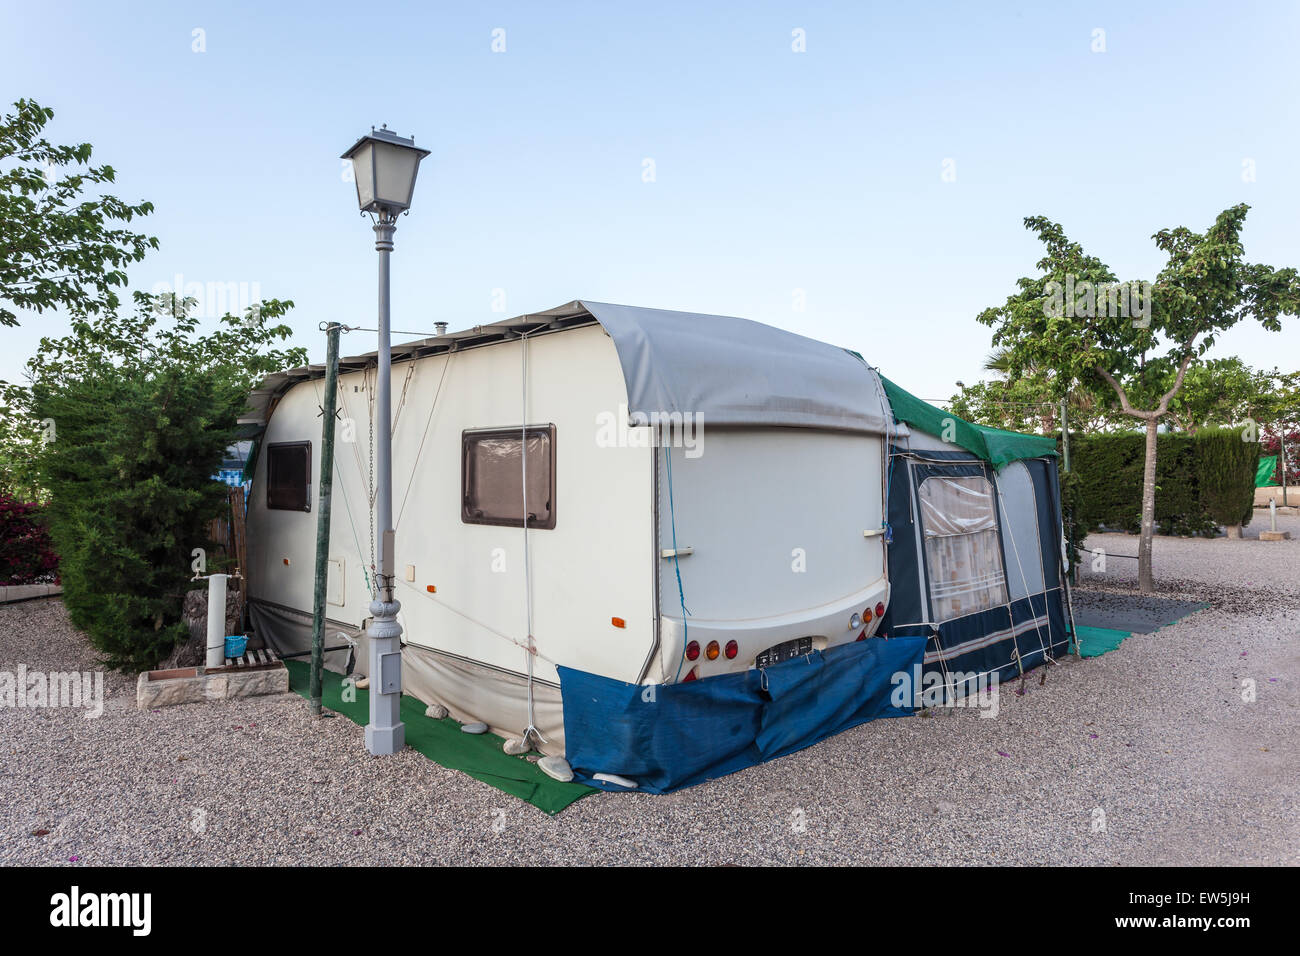 Sur un site de camping caravane Banque D'Images